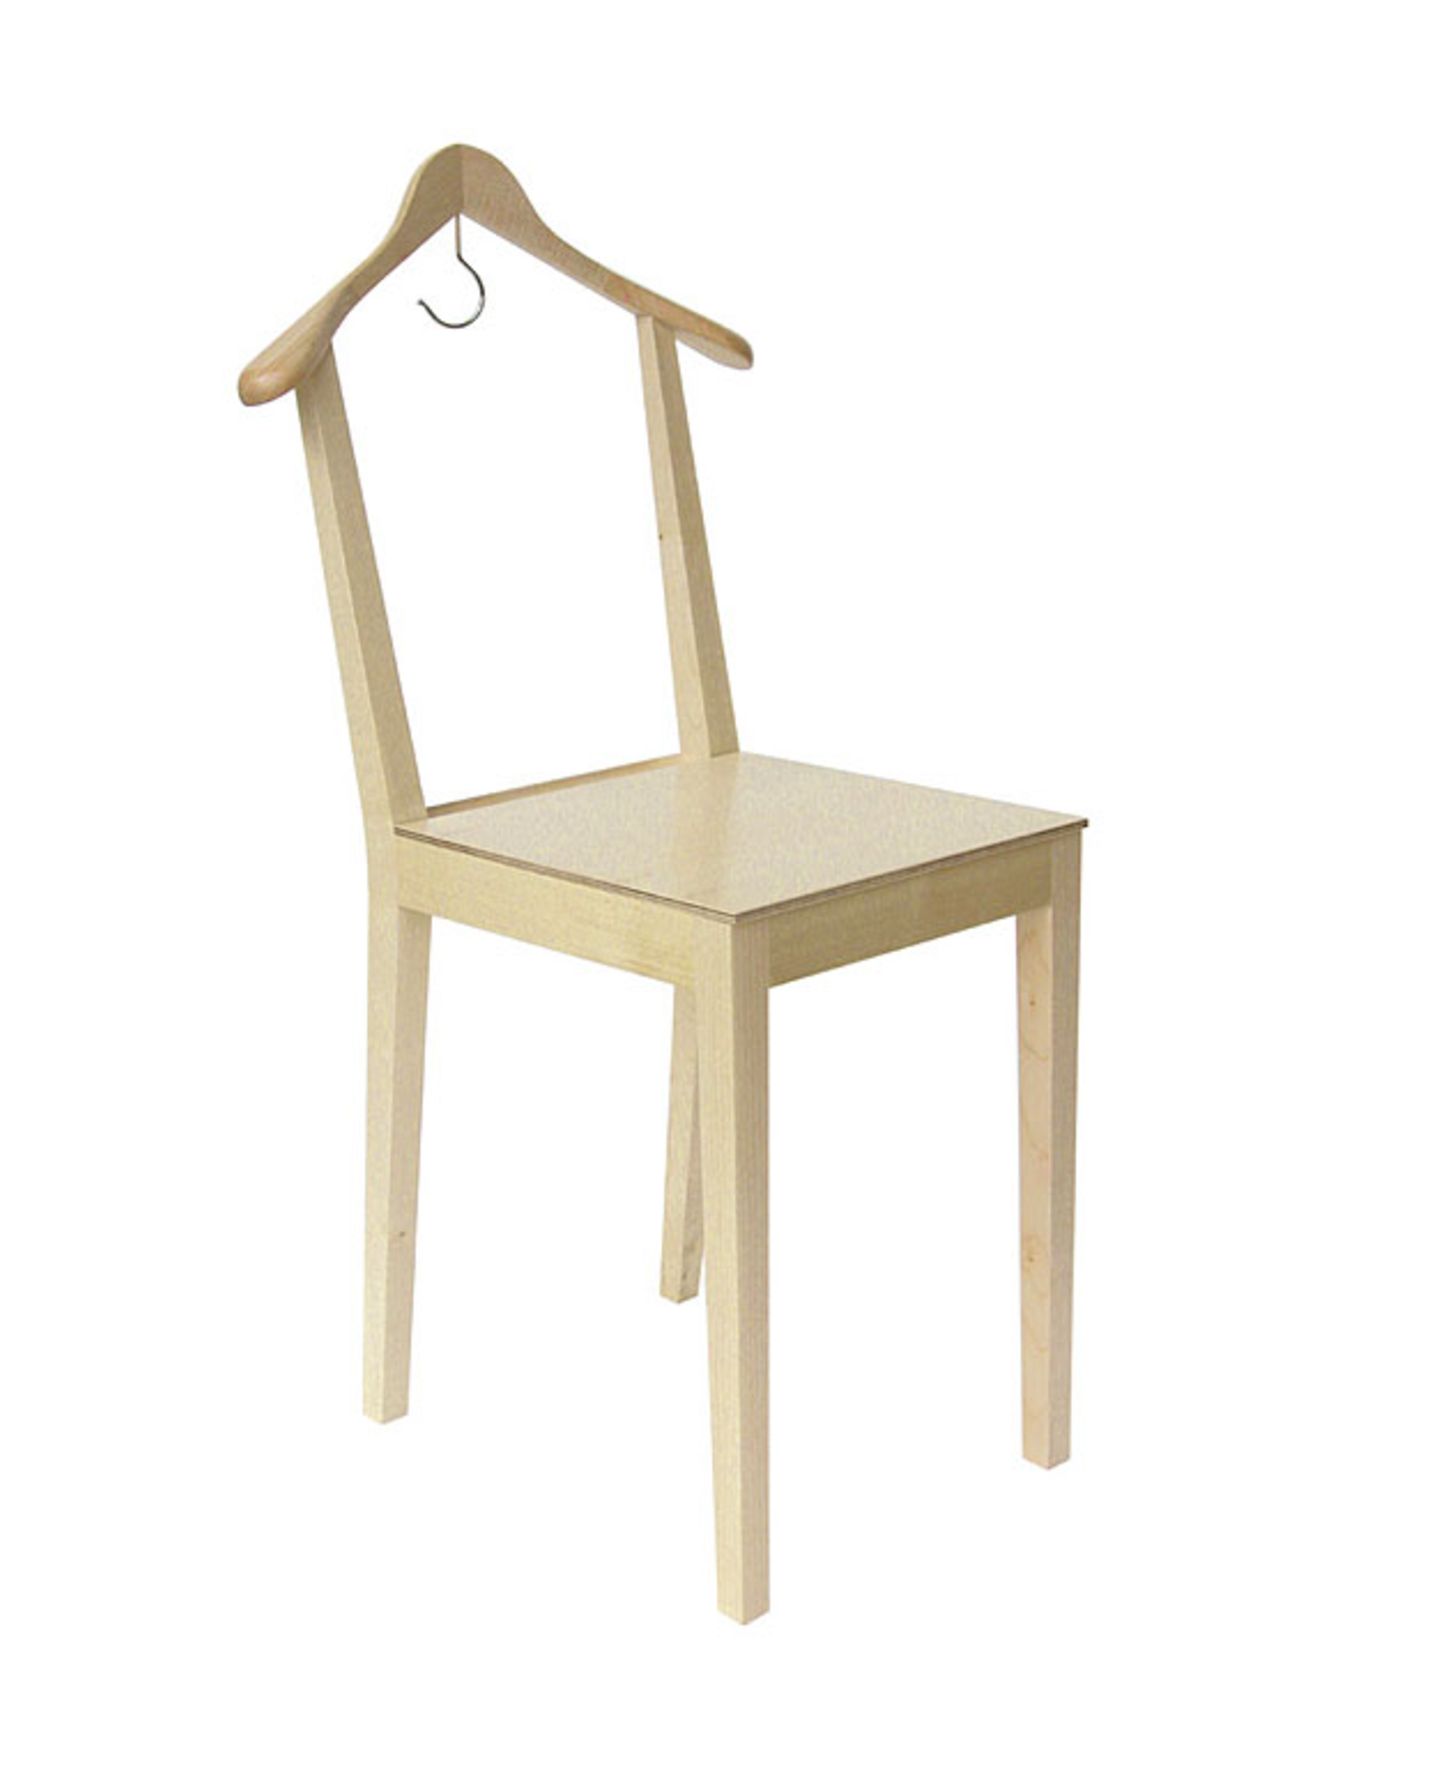 Stummer Diener "Kleiderbügelstuhl" von Details Produkte - Bild 14